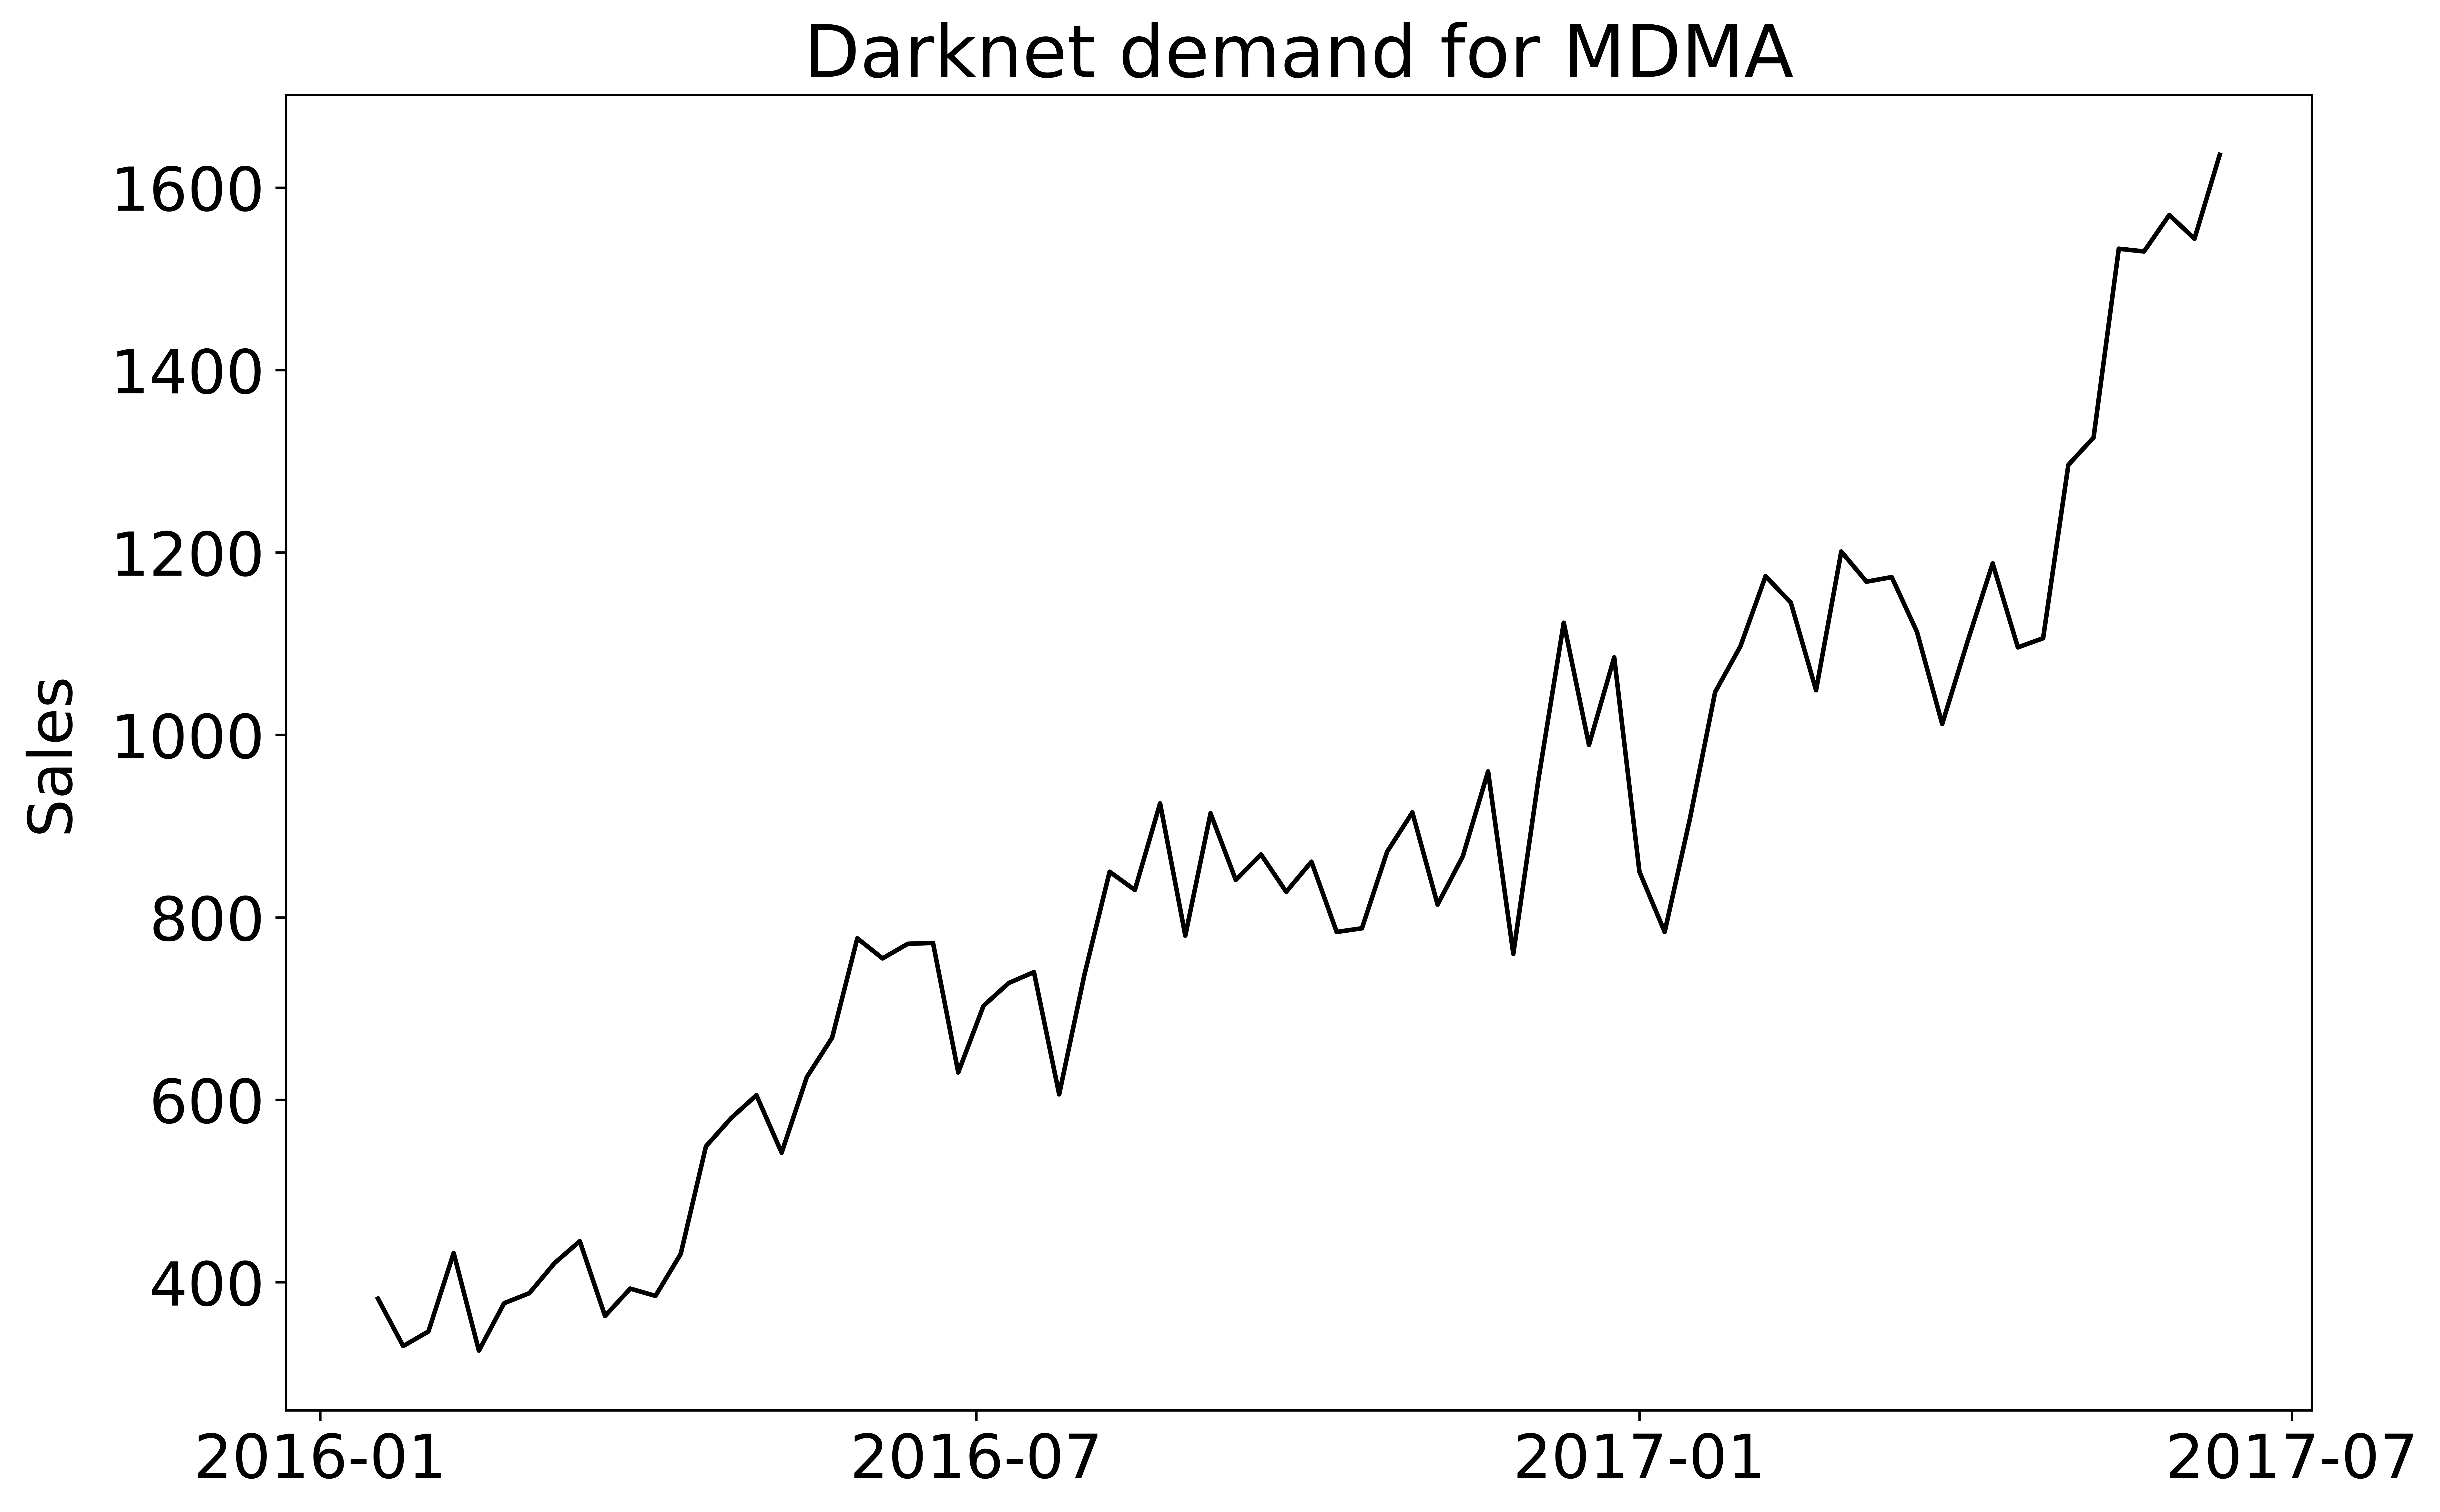 Darknet demand for MDMA 2016-01 to 2017-07